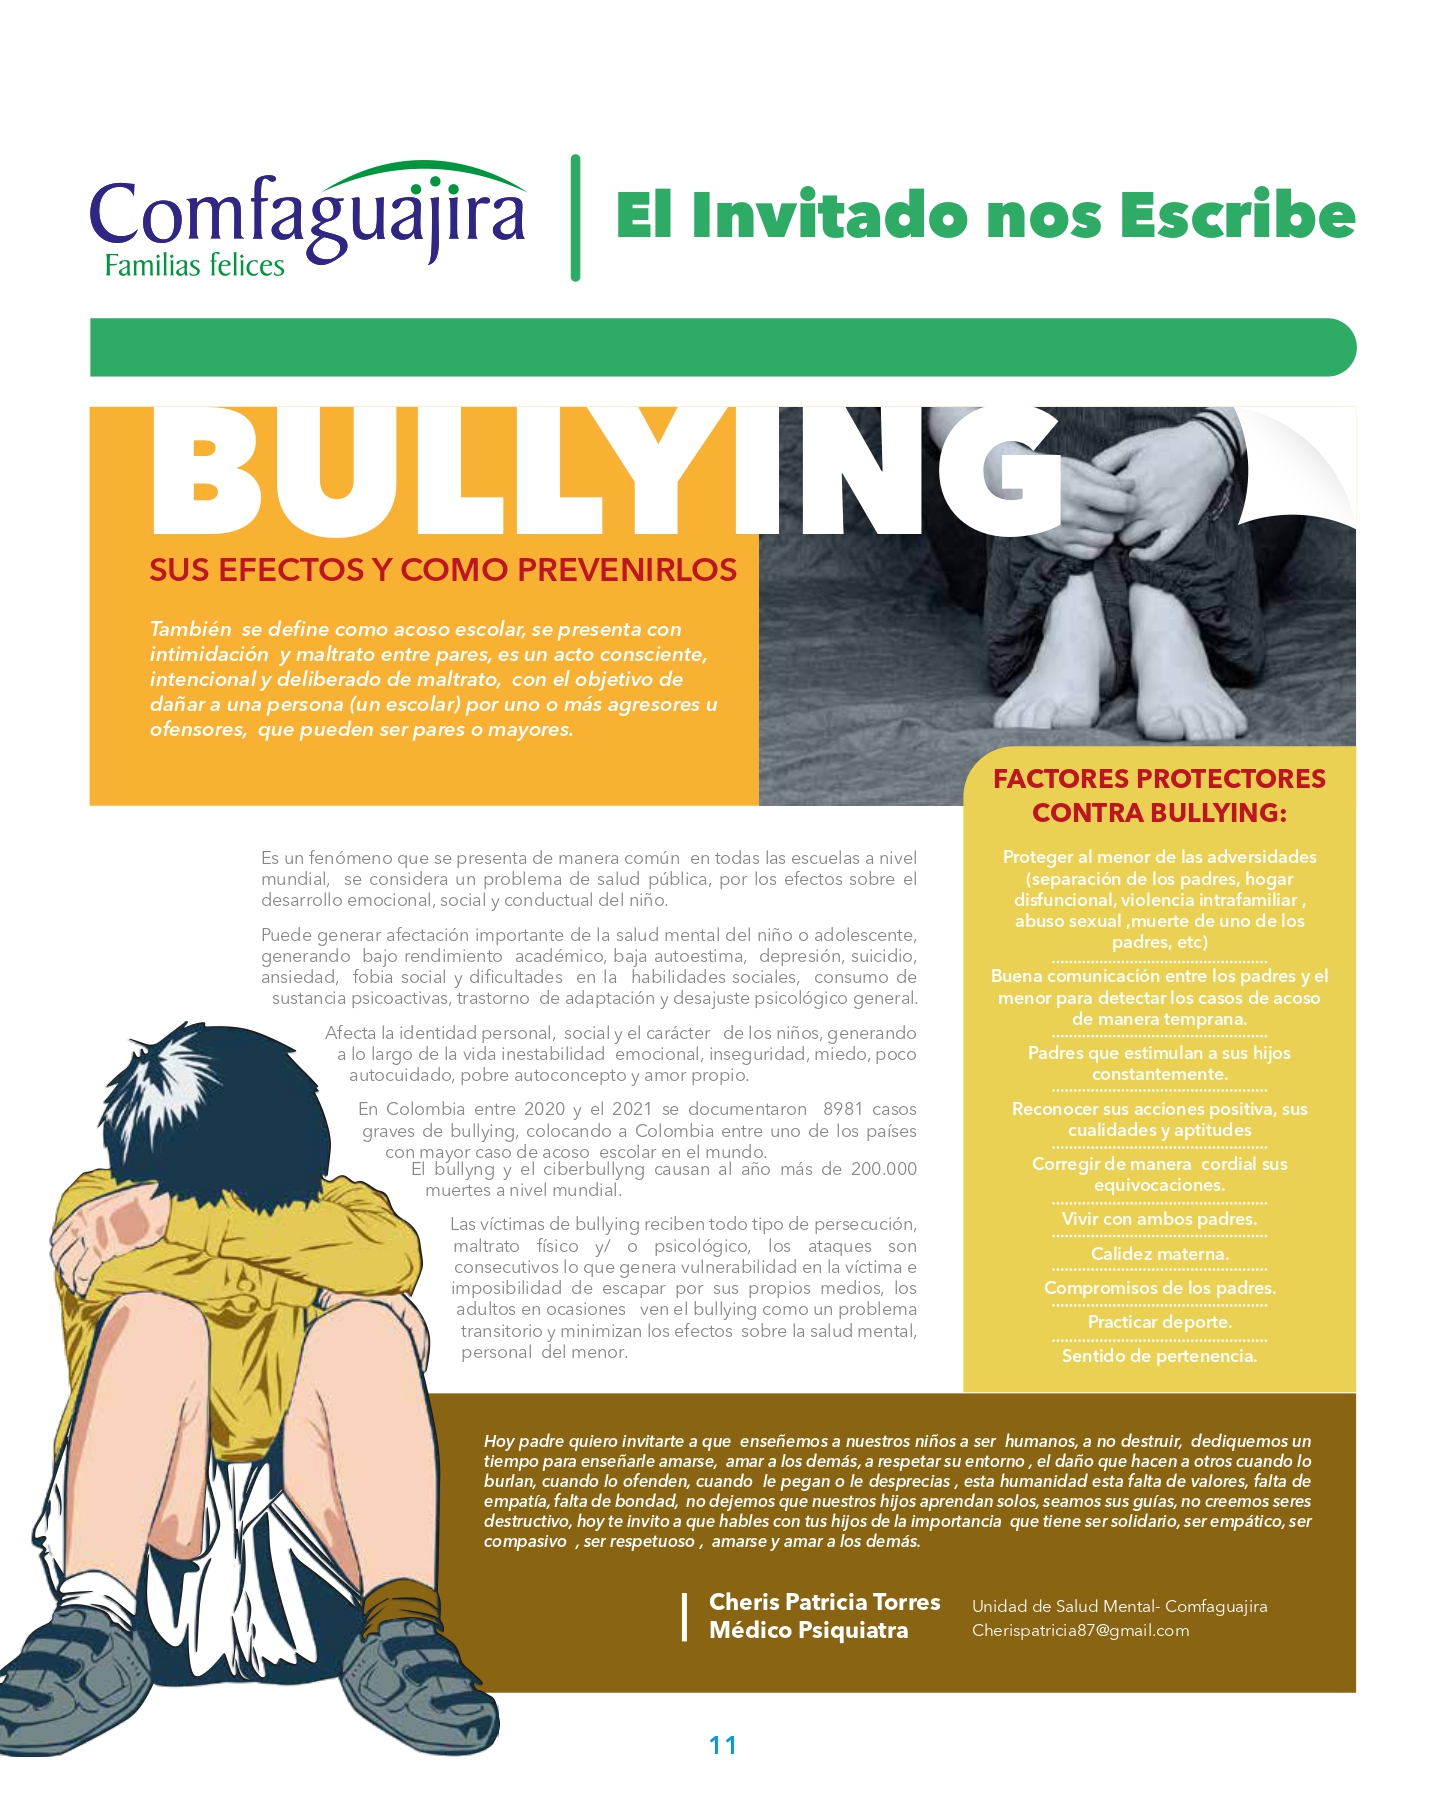 El  bullying, sus efectos y como prevenirlos